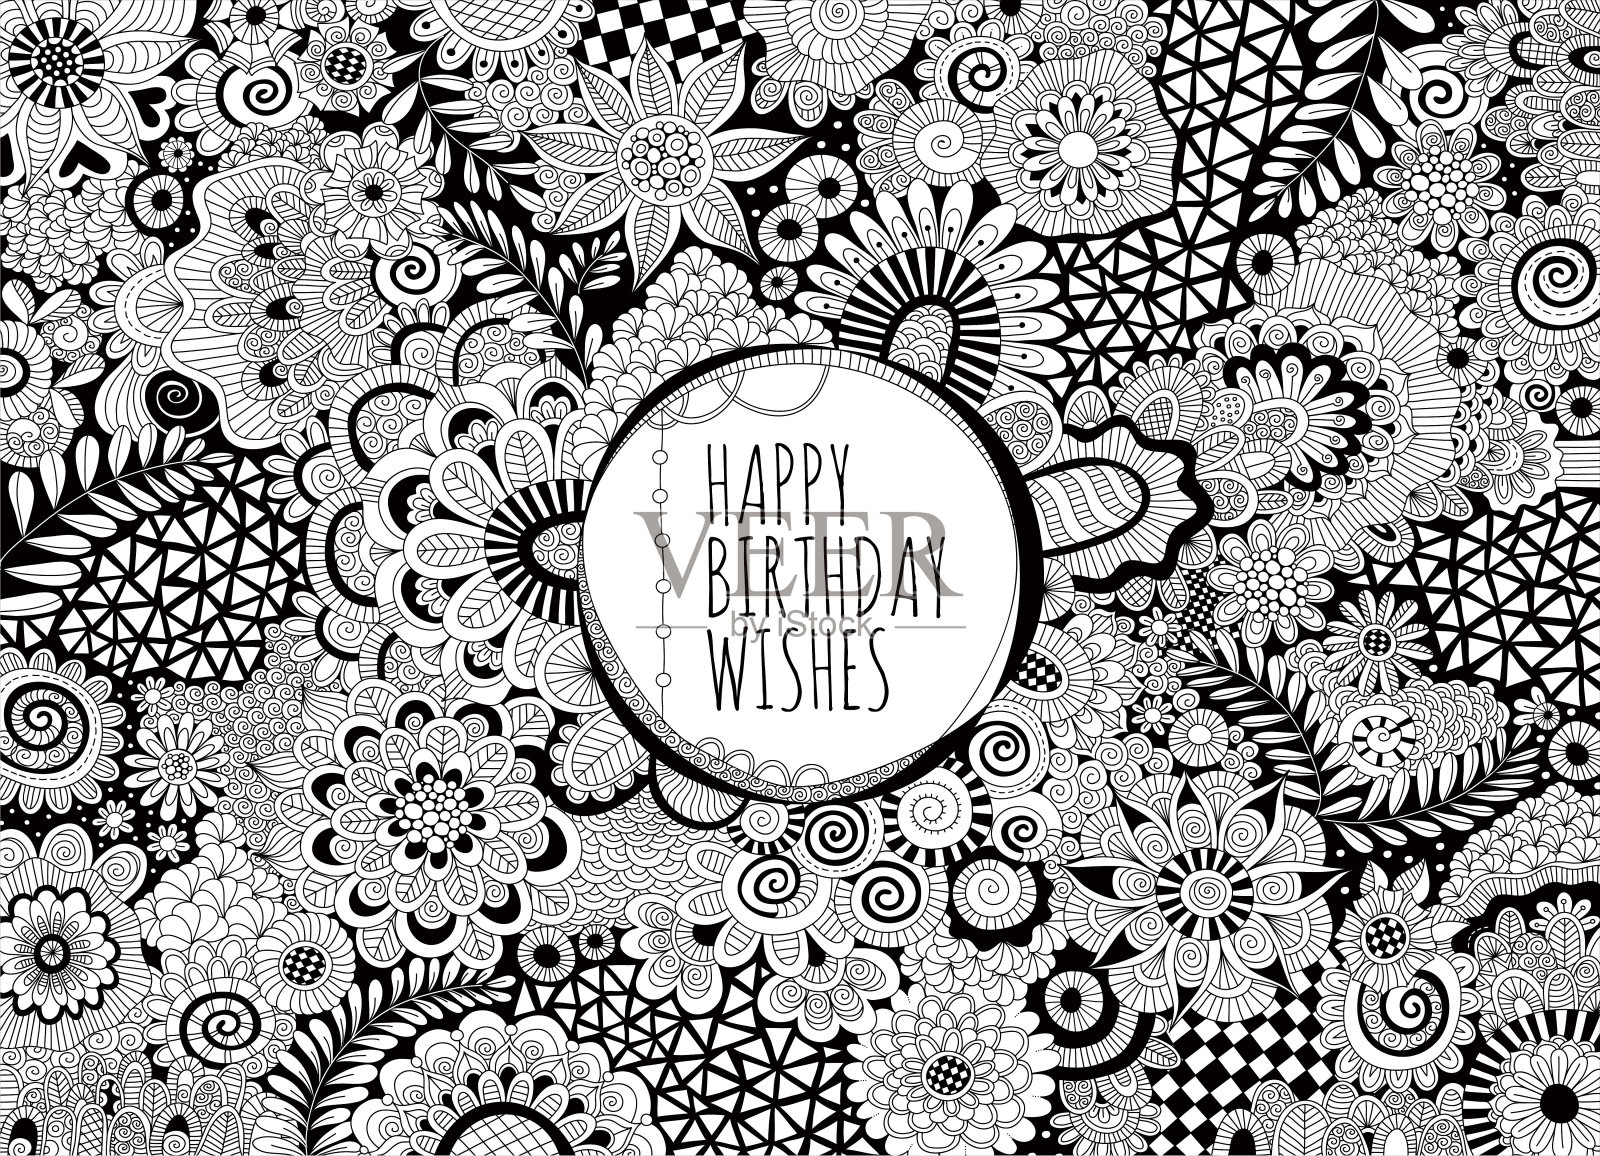 祝你生日快乐黑白矢量线形涂鸦插画图片素材